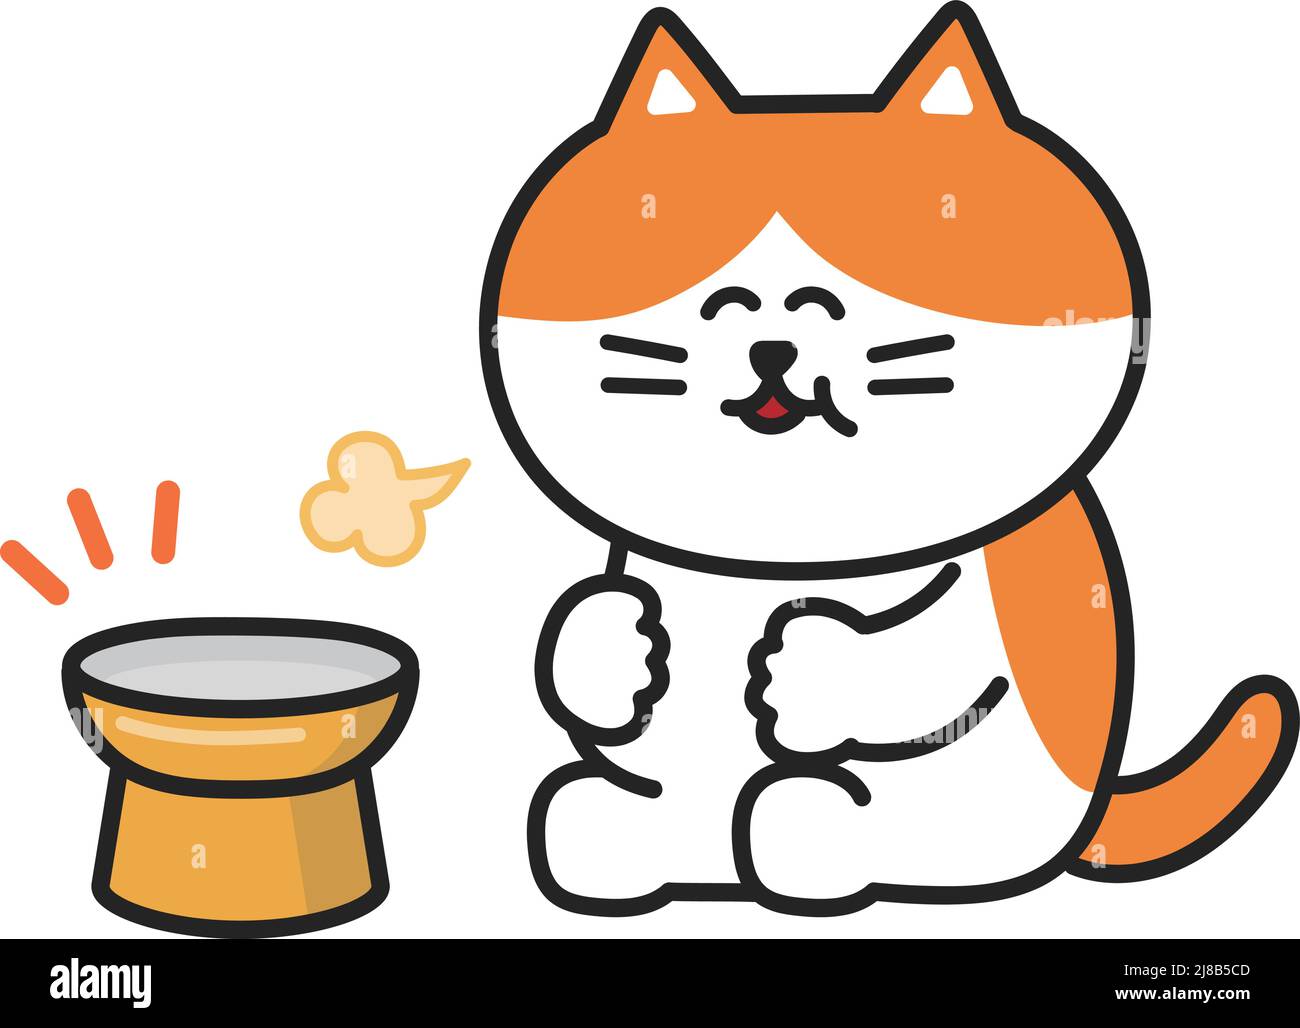 Il gatto tabby arancione è riempito felicemente con una ciotola vuota, illustrazione vettoriale. Illustrazione Vettoriale